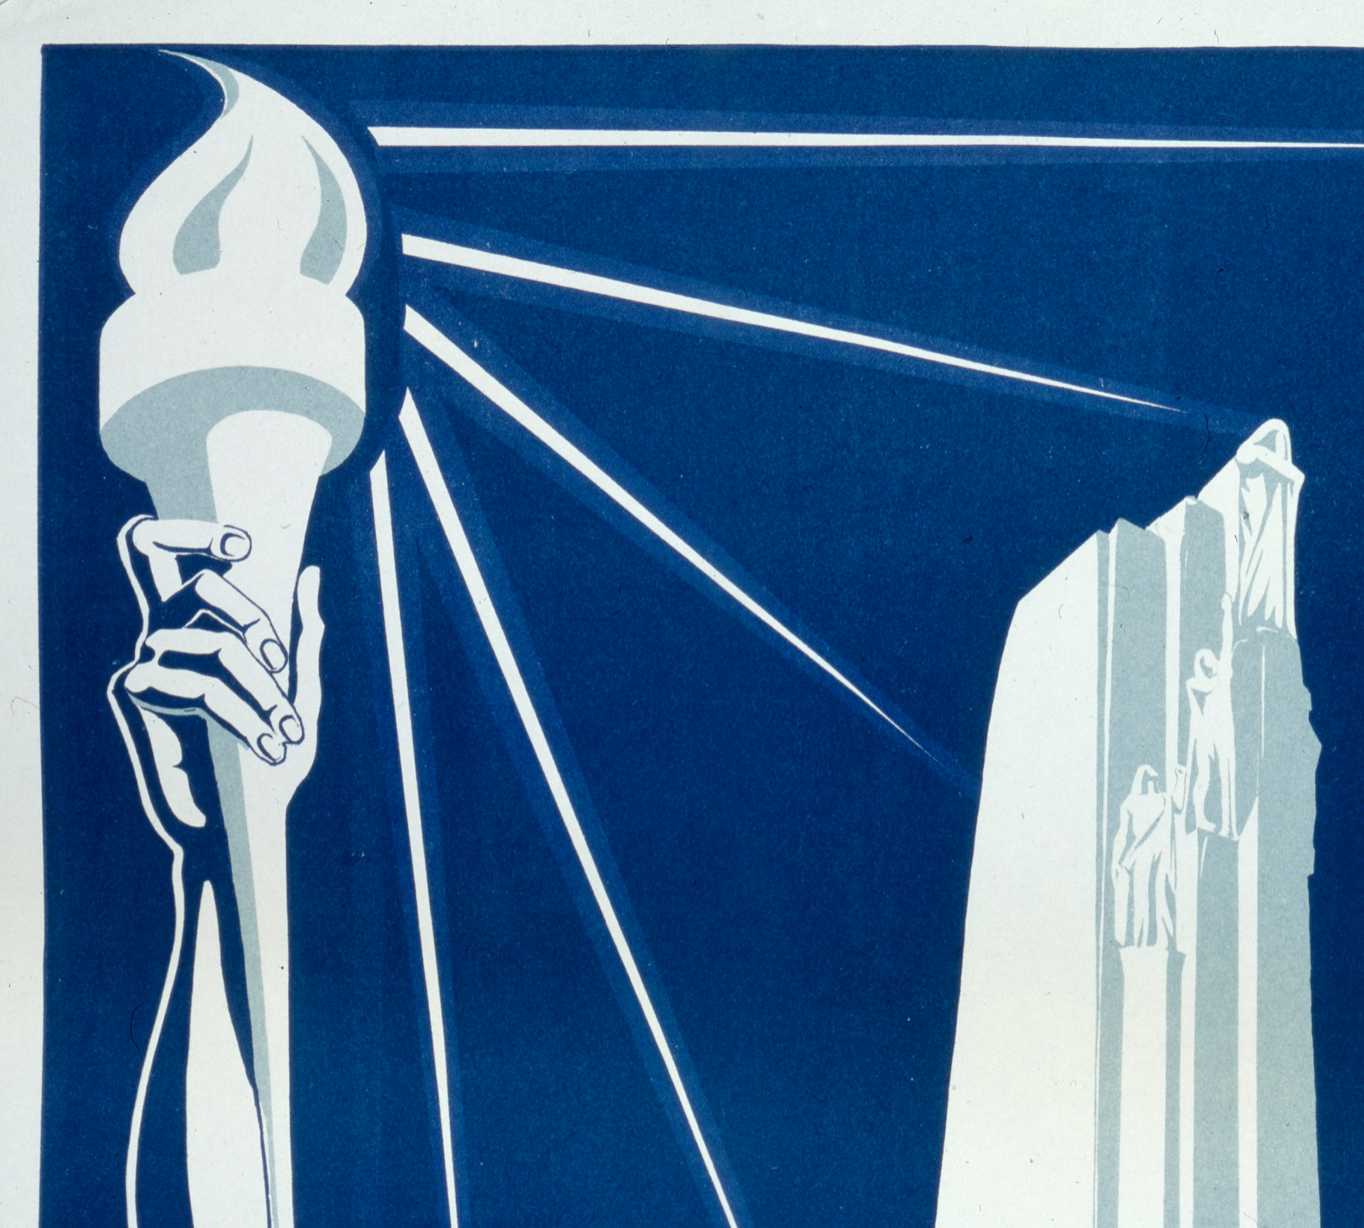 Affiche illustrée en bleu et blanc. Les piliers du Mémorial de Vimy à droite; un homme torse nu, les bras tendus vers le ciel, tient un flambeau allumé, d’où s’échappent des faisceaux de lumière.